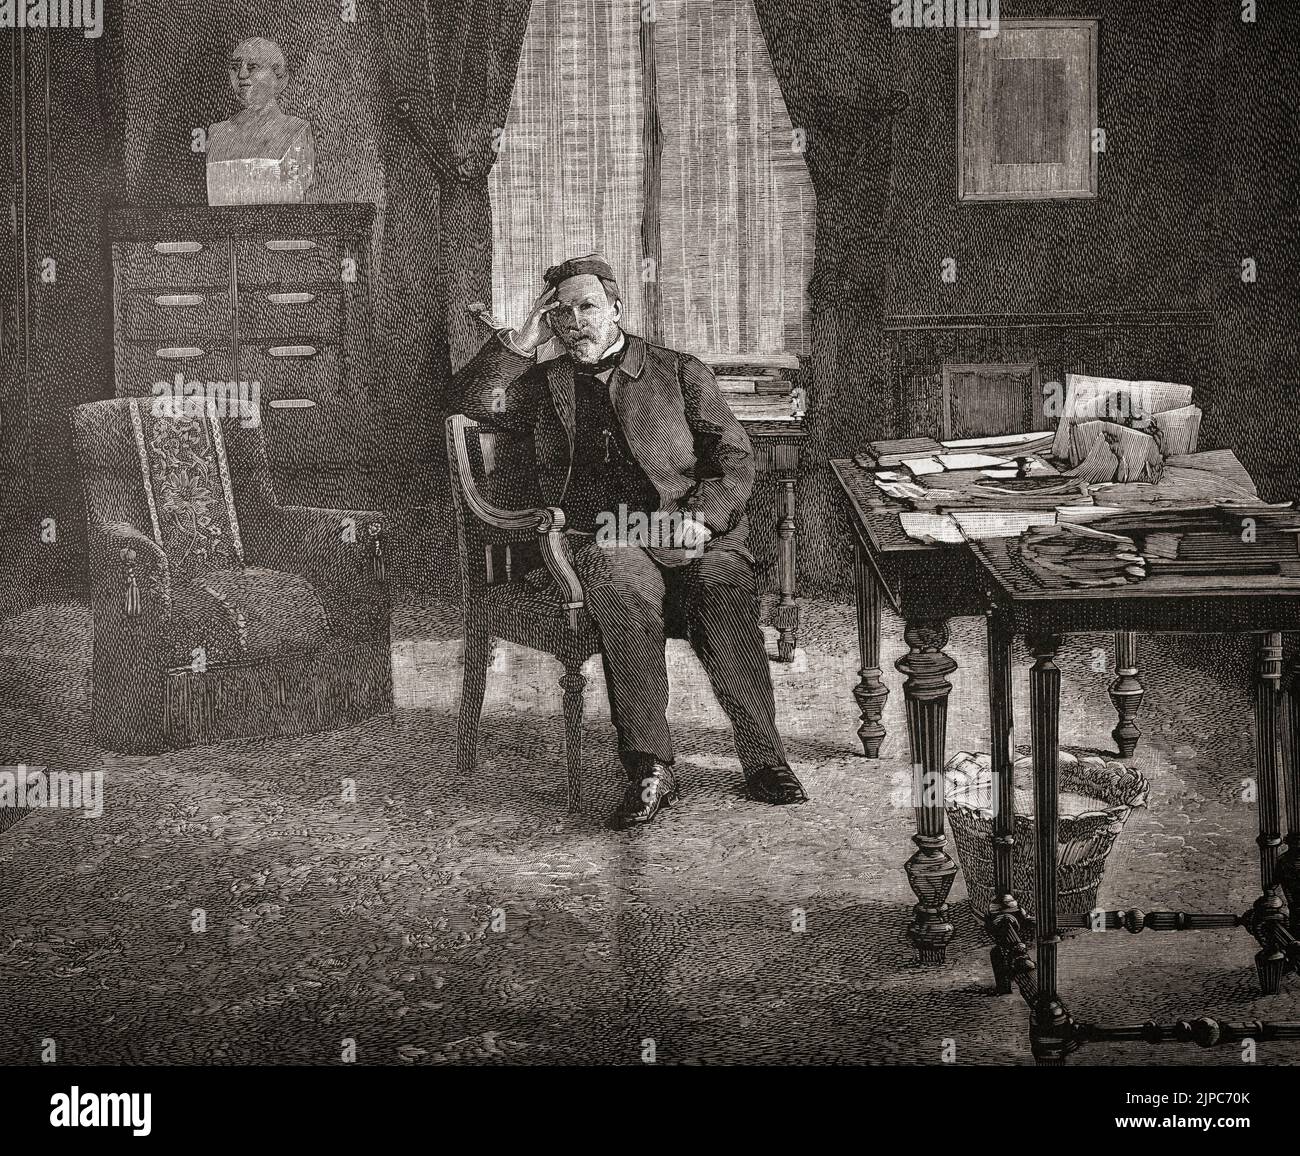 Louis Pasteur nel suo ufficio presso l'Istituto Pasteur di Parigi. Louis Pasteur, 1822 - 1895. Chimico e microbioligista francese che scoprì, tra l'altro, la pastorizzazione e i principi della vaccinazione. Fu anche un primo sostenitore moderno della teoria germinale delle malattie. Dopo un'illustrazione in un'edizione 1890 di Scientific American. Foto Stock